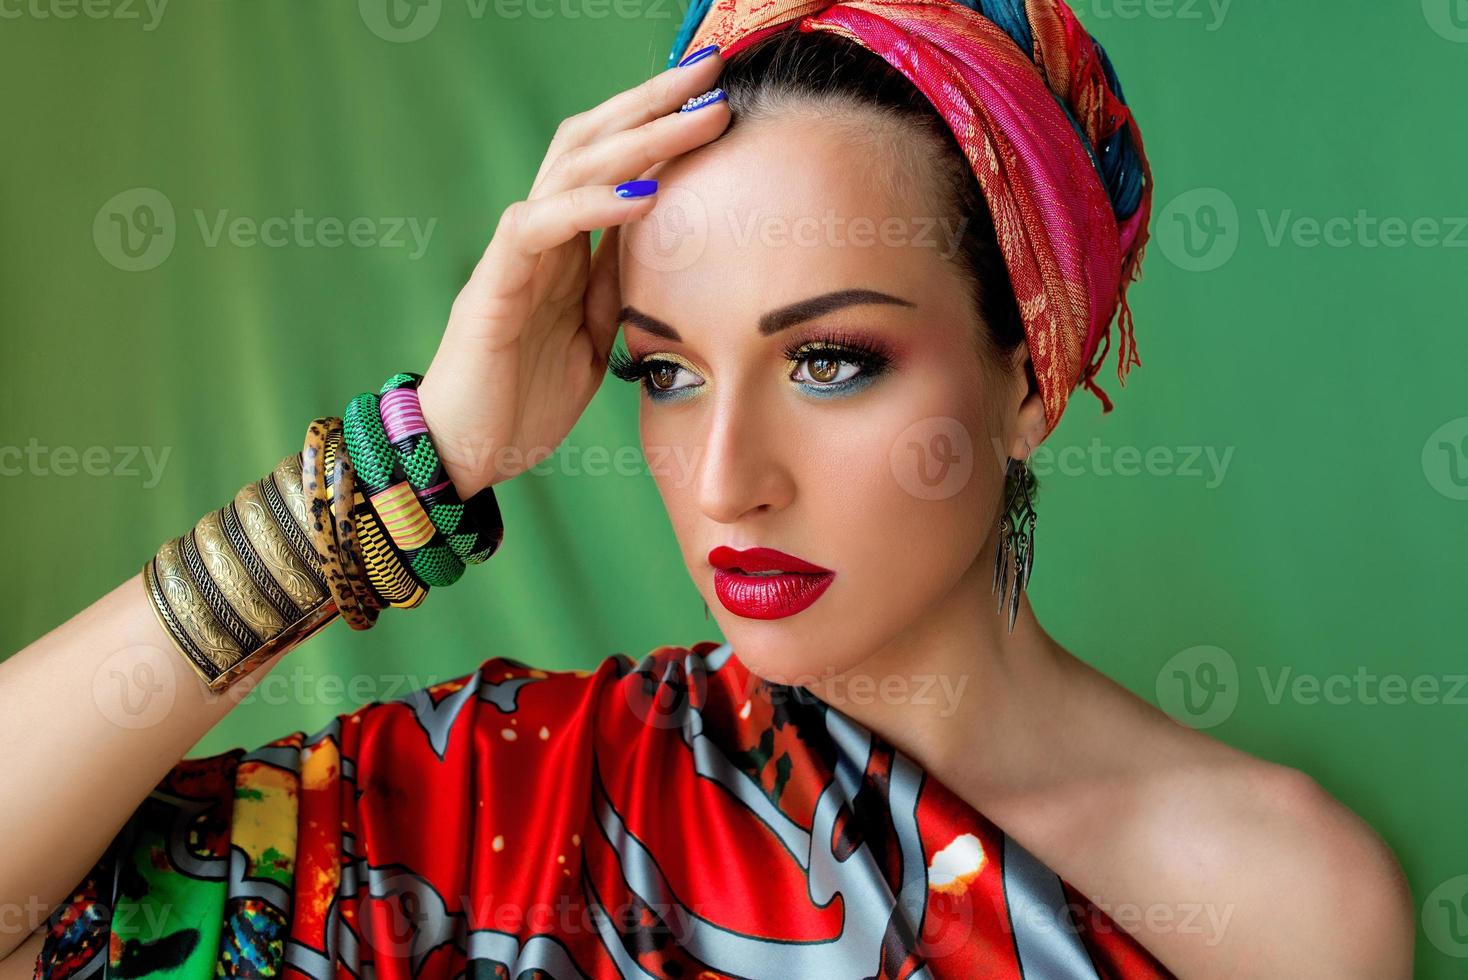 retrato de uma jovem cantora atraente em estilo africano sobre fundo colorido. foto